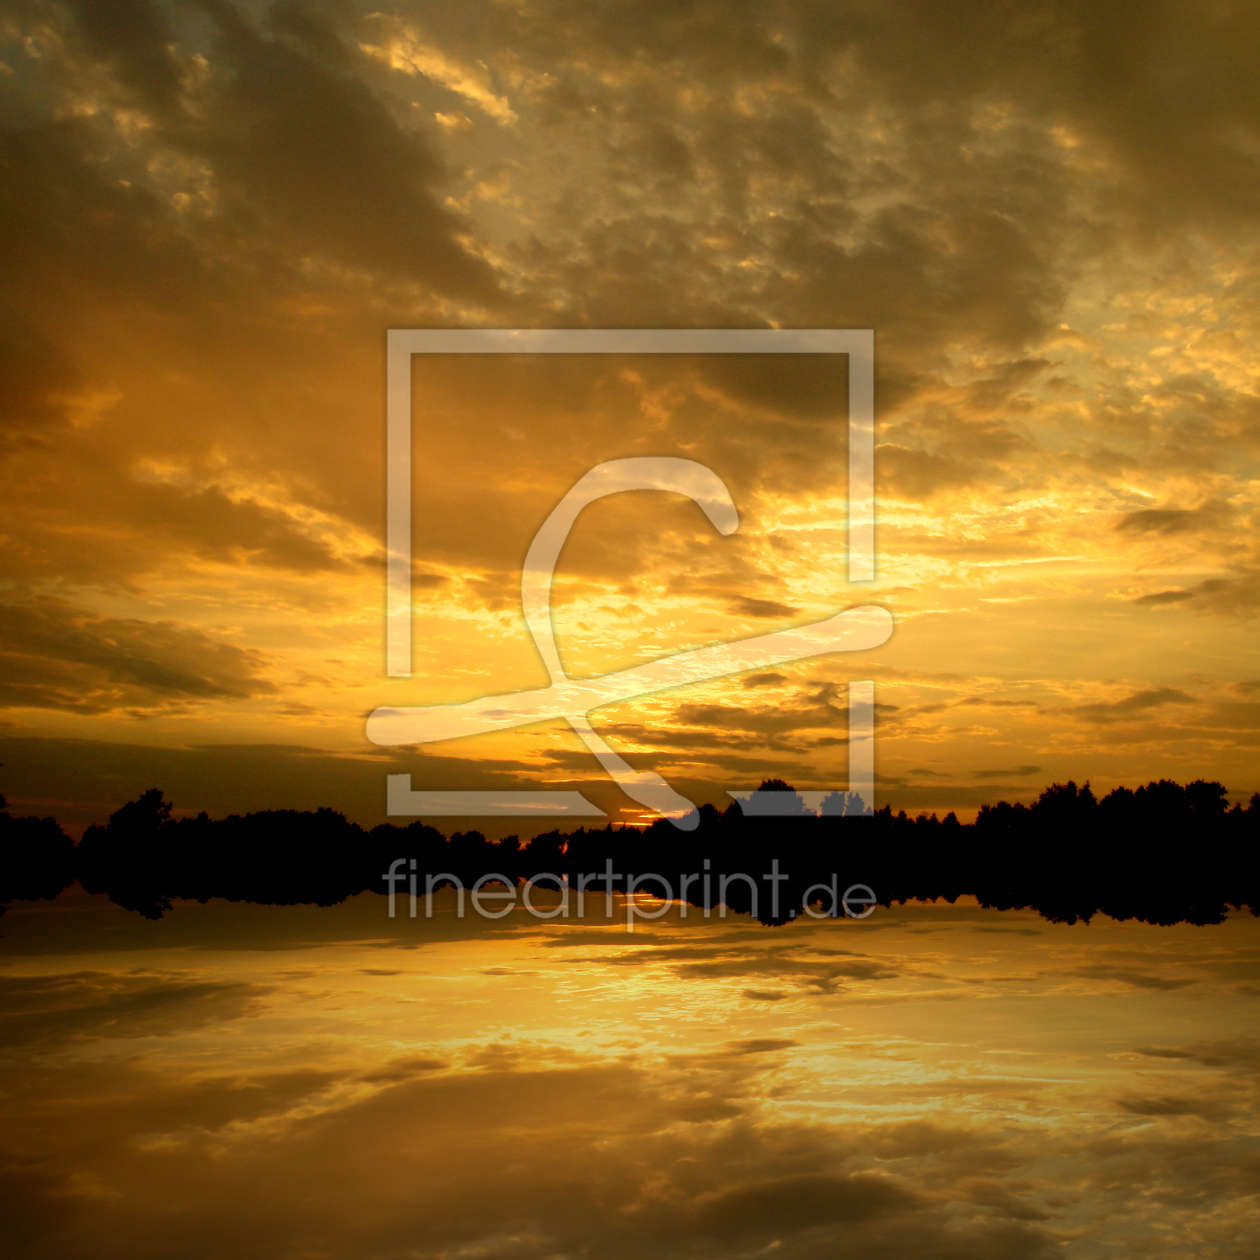 Bild-Nr.: 9712540 Orange sunset erstellt von yammay